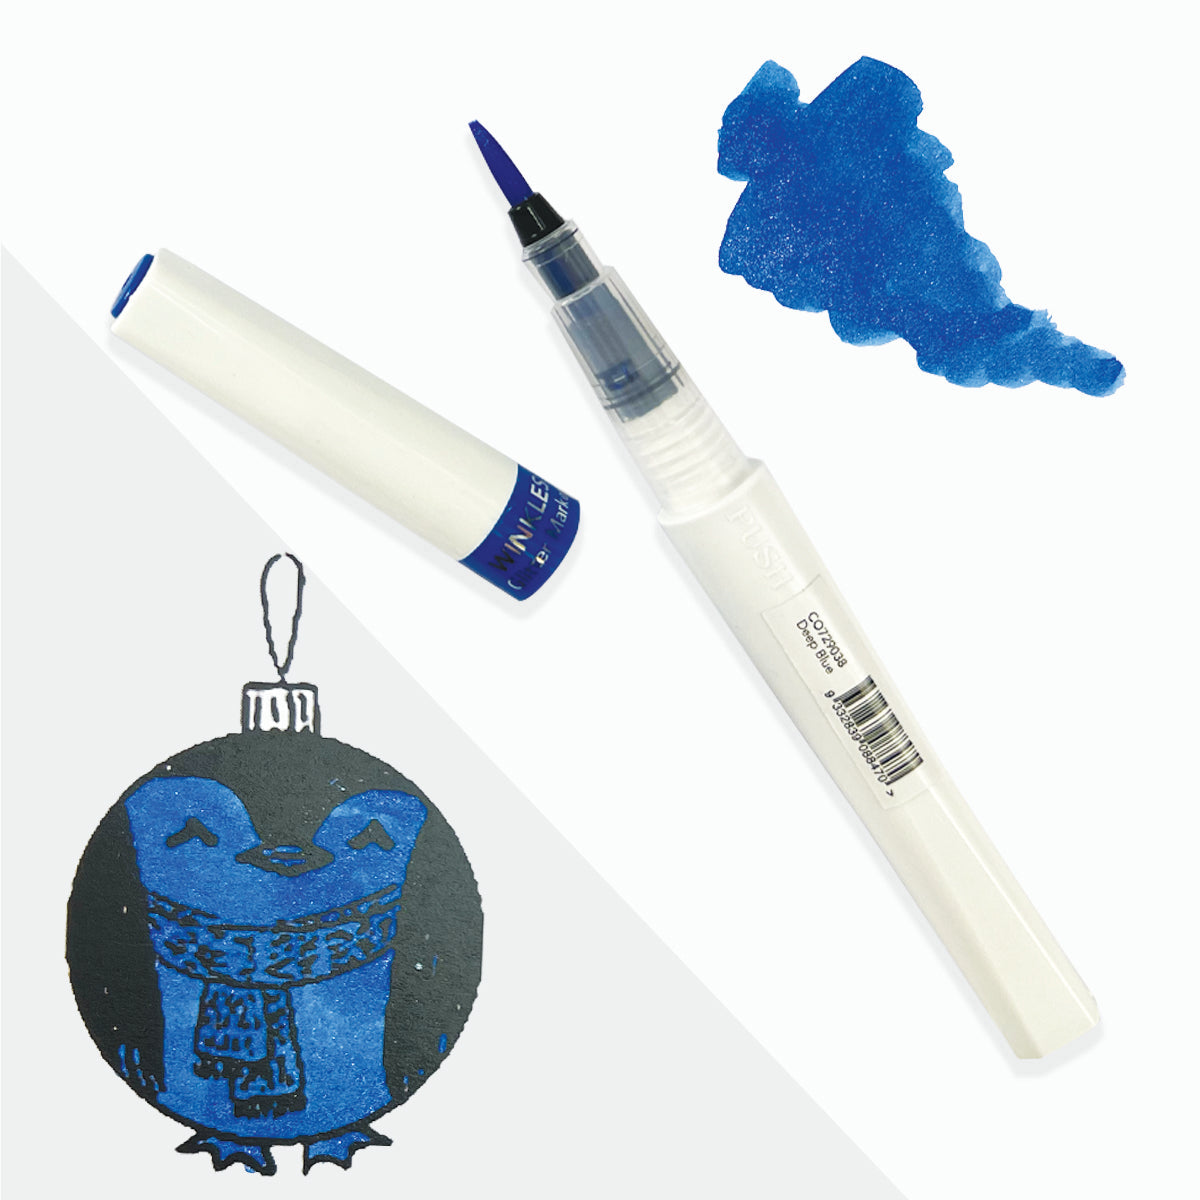 Winkles Shimmer Glitter Pen Set – 12 colours in carry case (holds 24 pens)